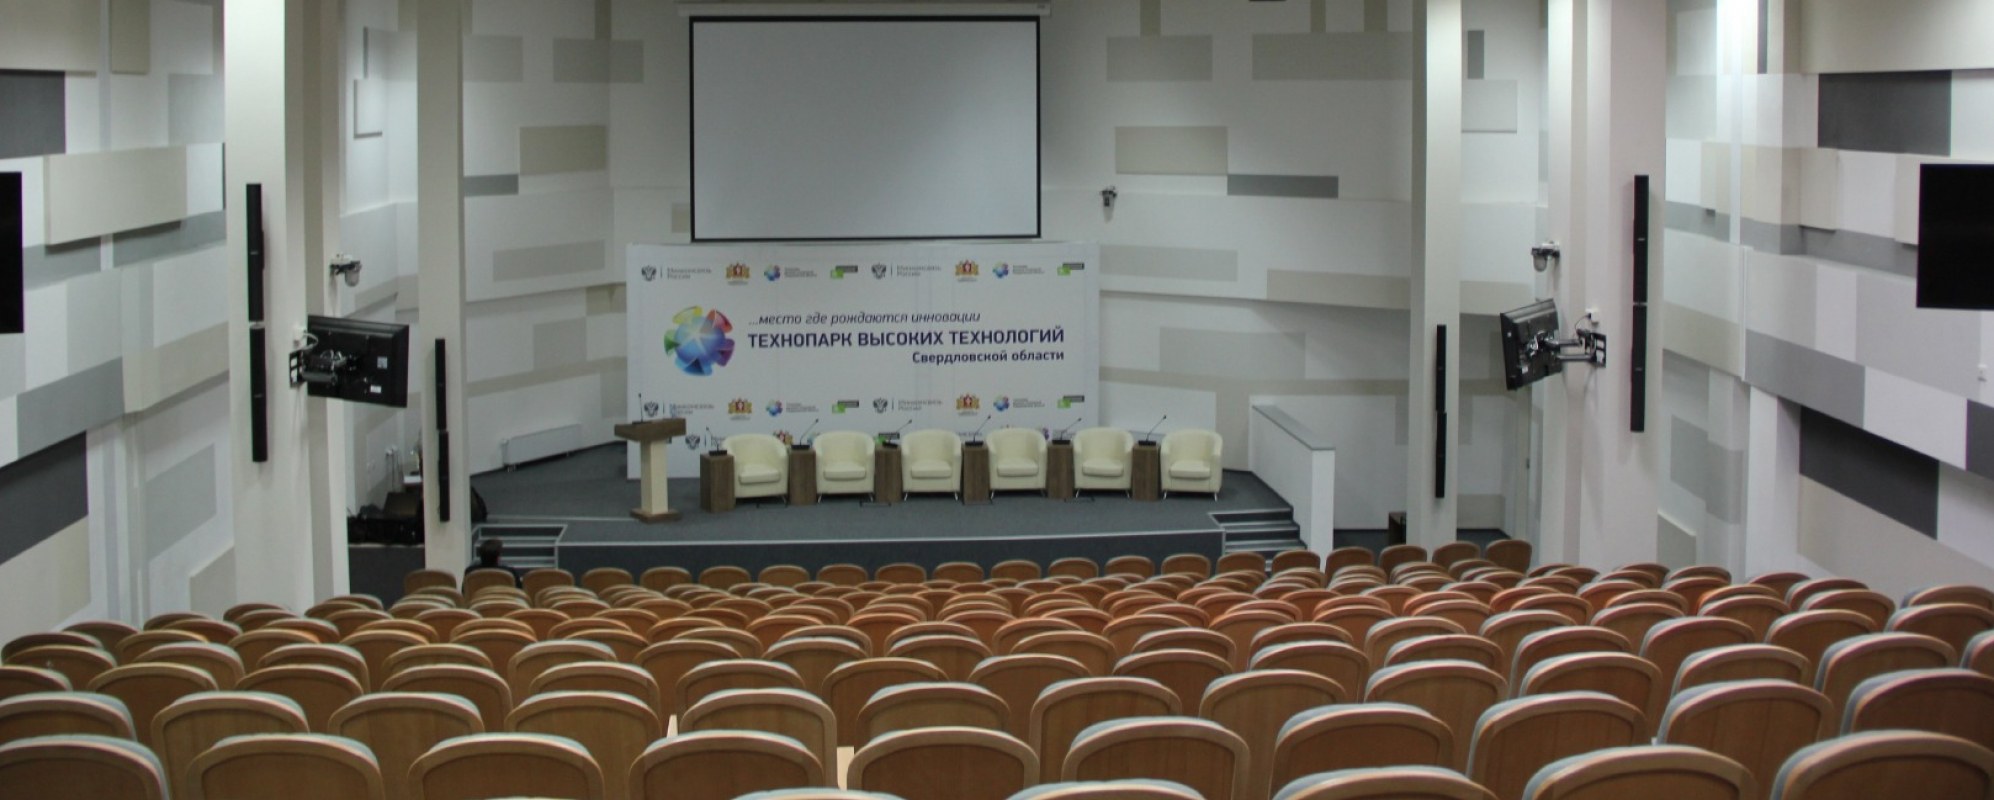 Фотографии конференц-зала Технопарк высоких технологий Свердловской области Университетский 